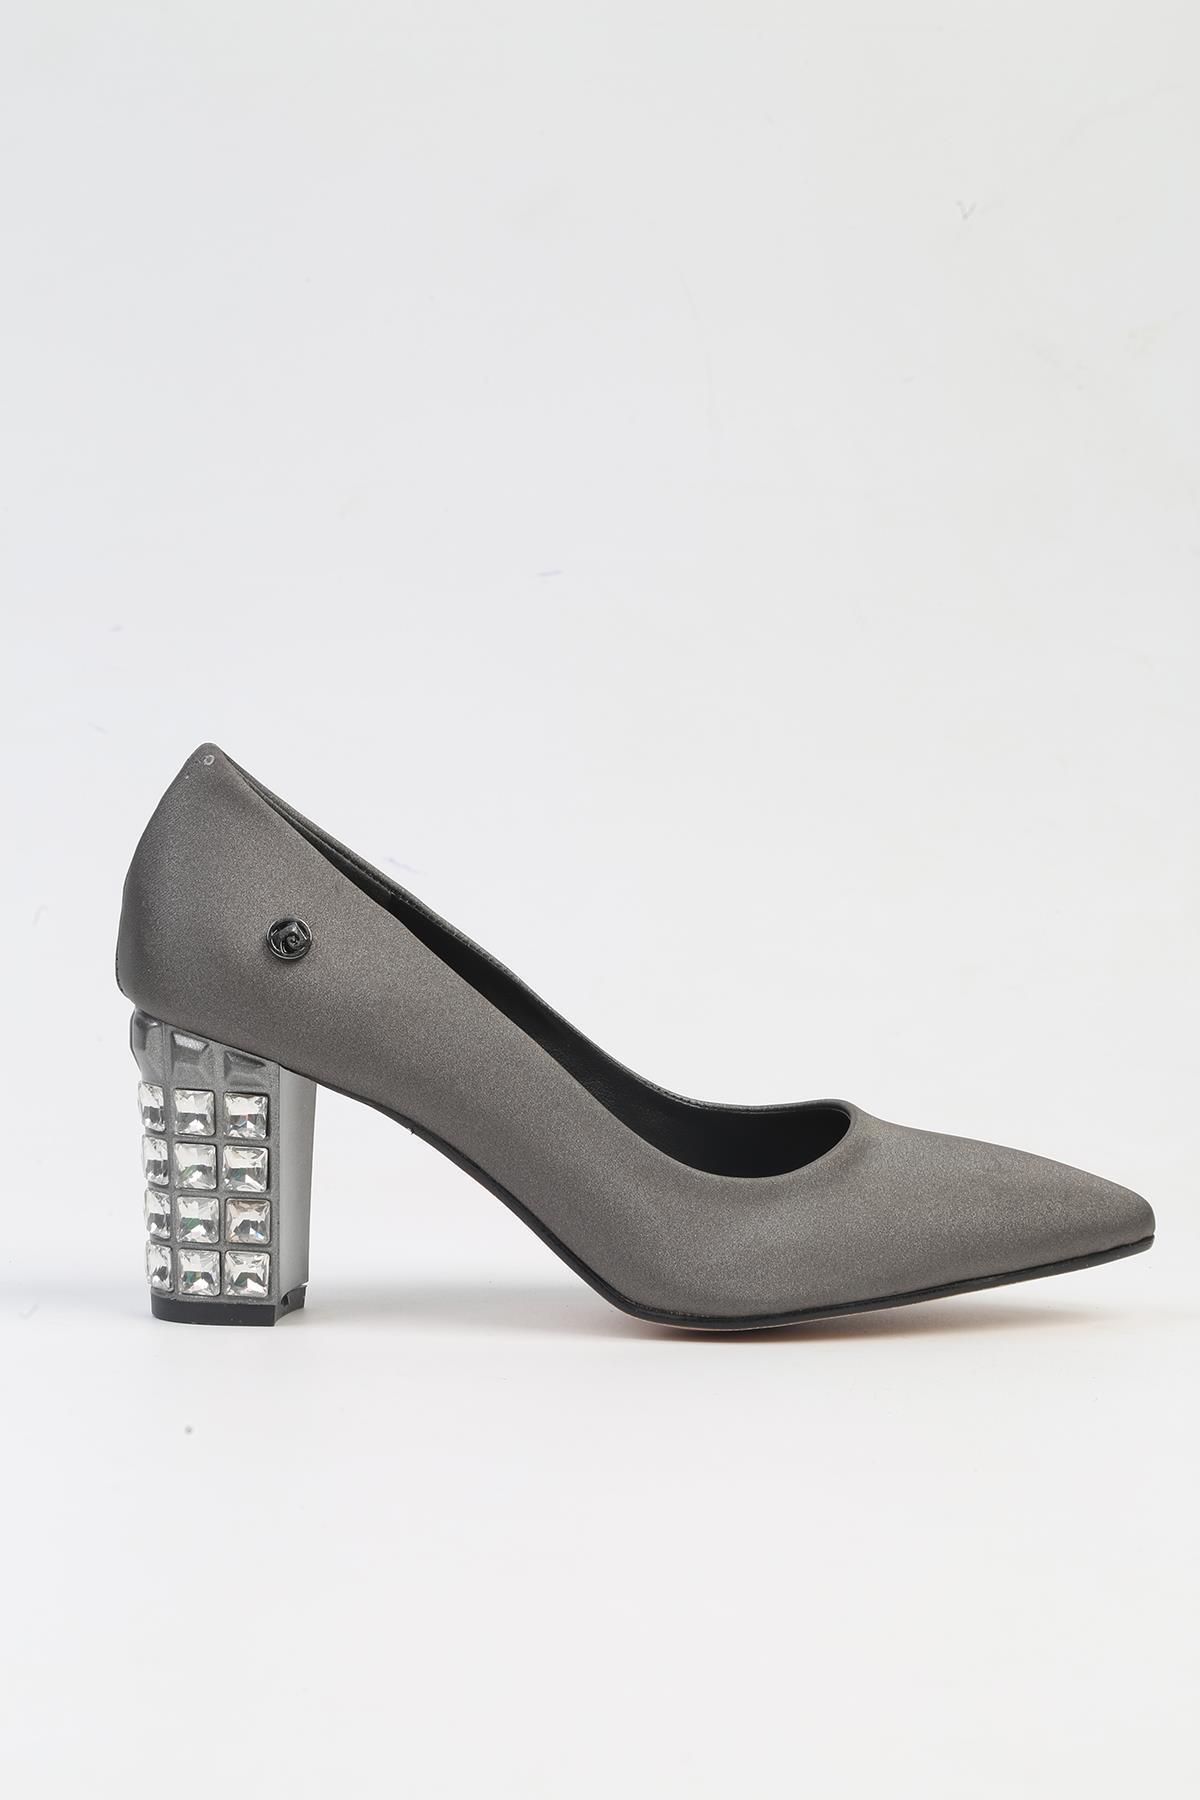 Pierre Cardin ® | PC-51201 - 3478 Platin Saten - Kadın Topuklu Ayakkabı